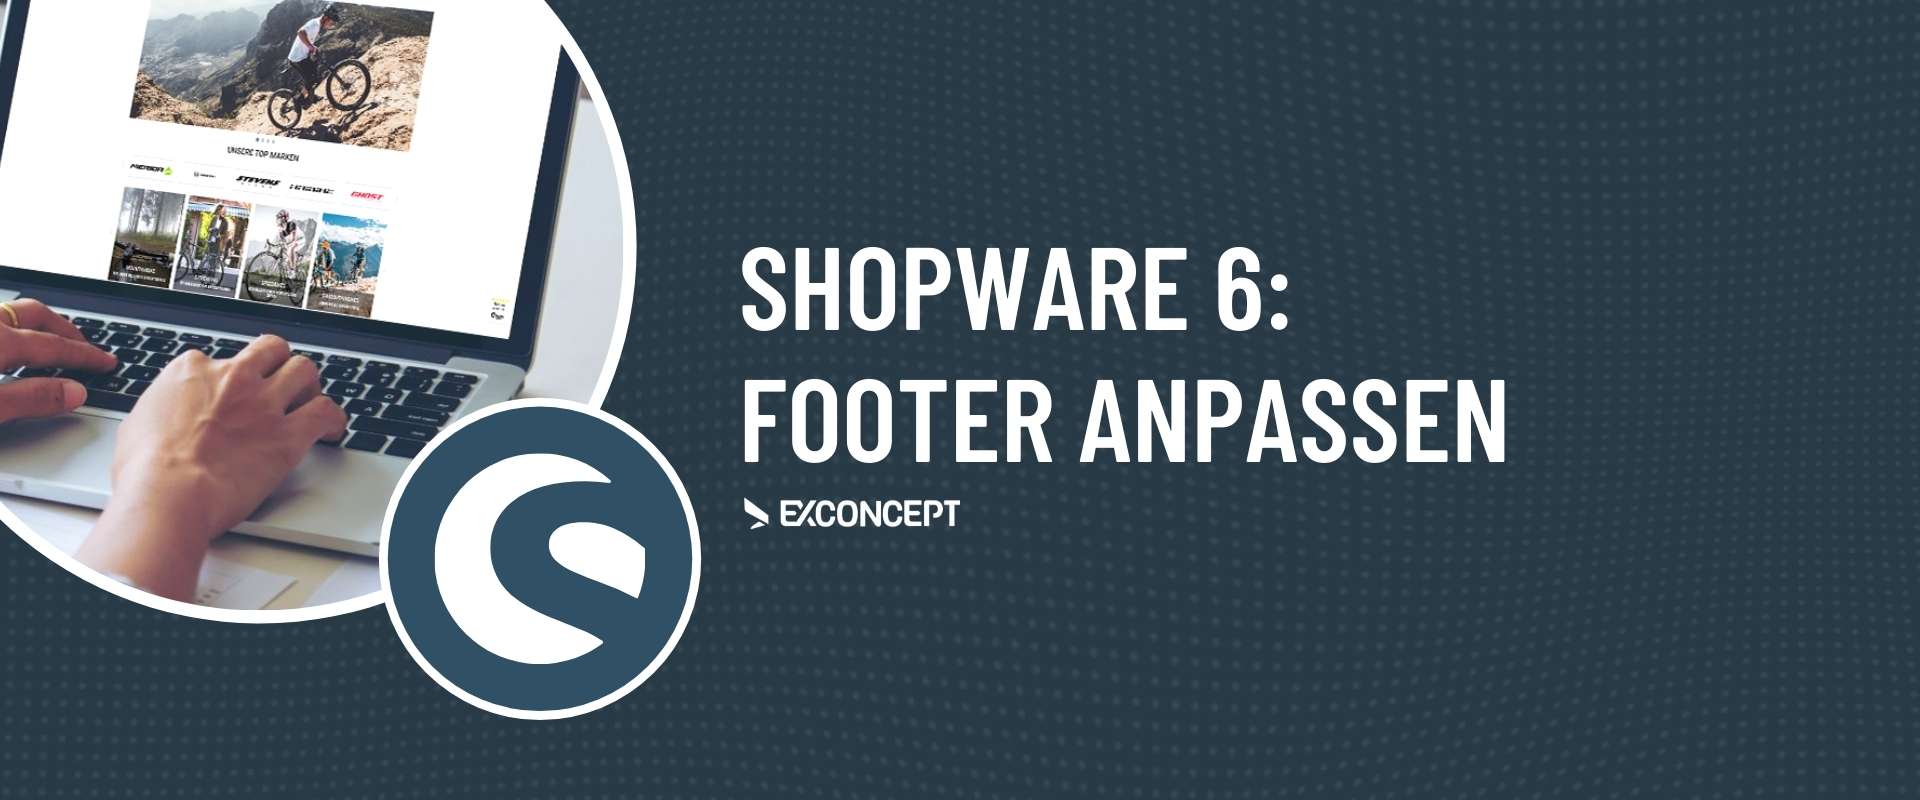 Shopware Dienstleister für Shopware 6: Footer anpassen